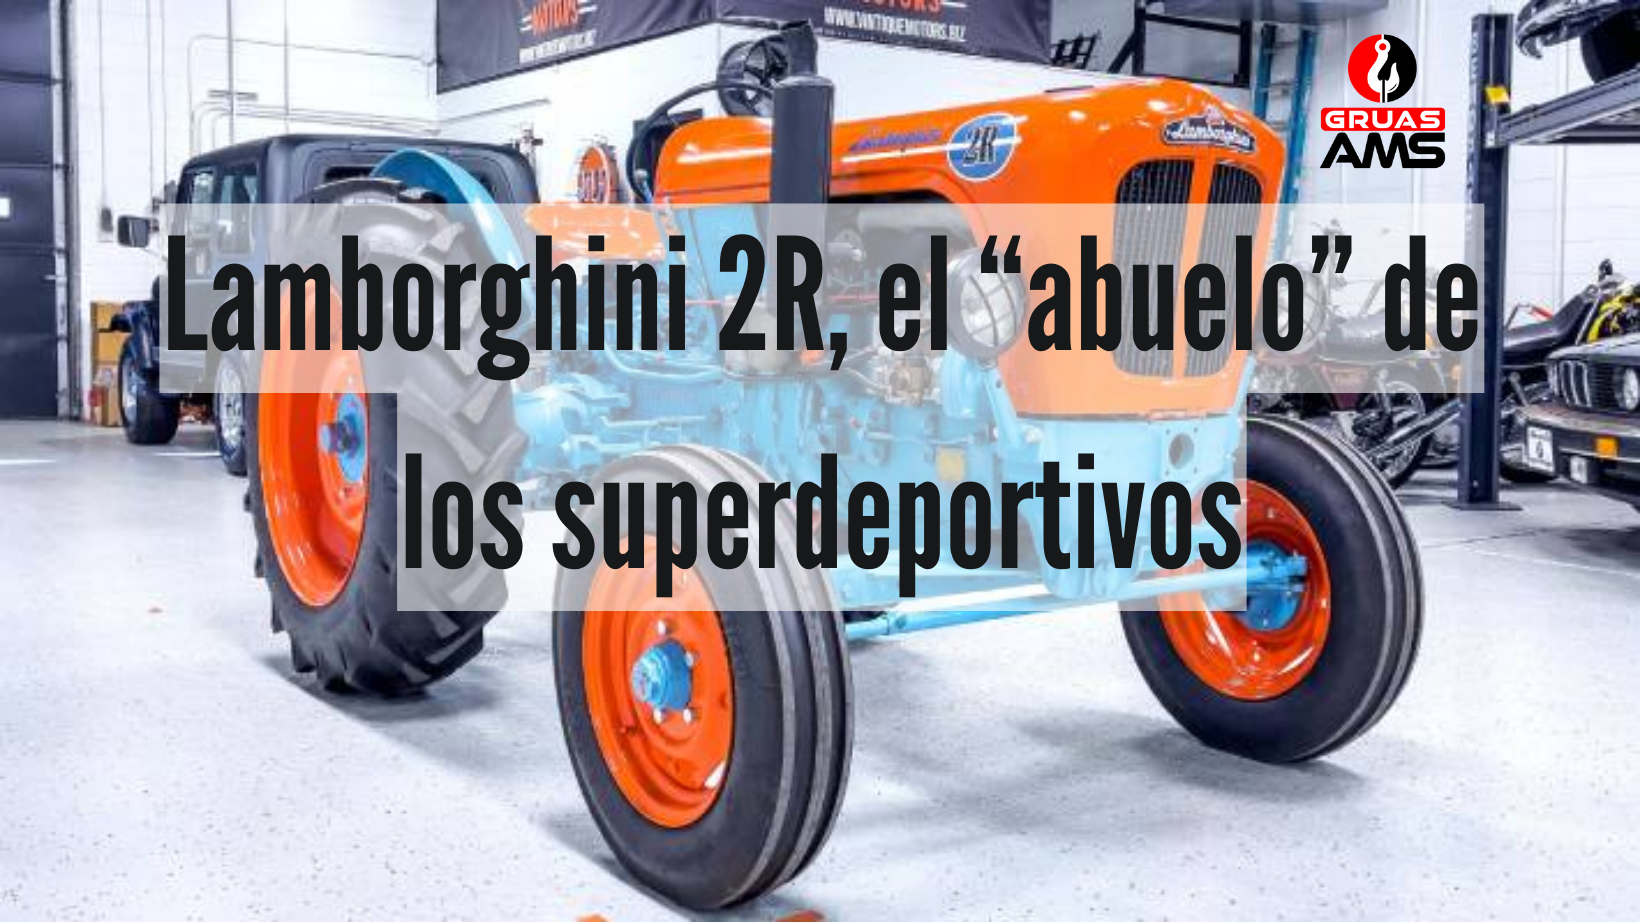 Sale a subasta un Lamborghini 2R, el “abuelo” de los superdeportivos